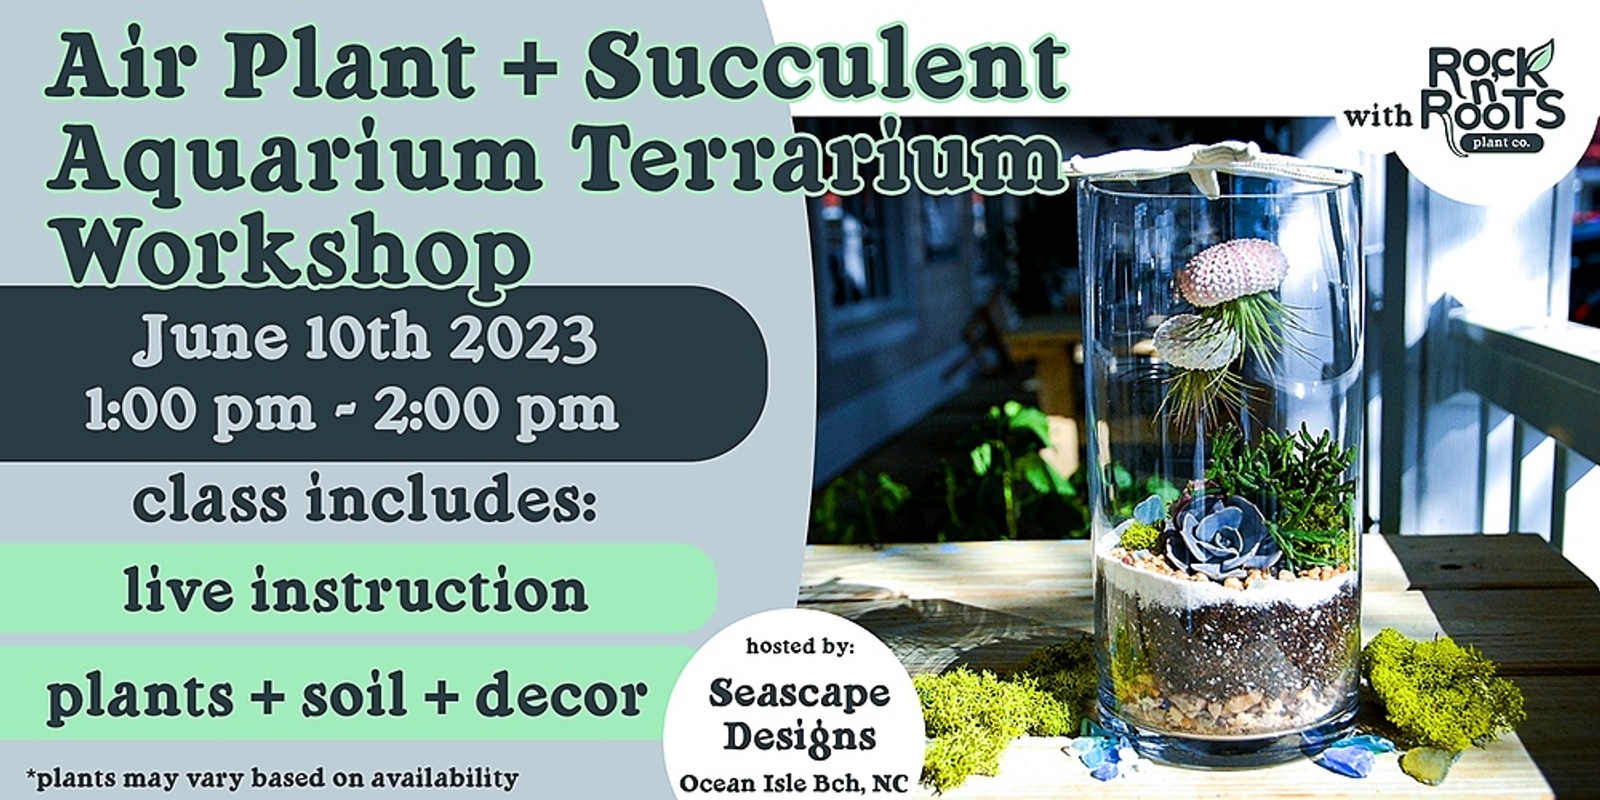 Air Plant + Succulent Aquarium Terrarium Workshop at Seascape Designs (Ocean Isle Beach, NC)